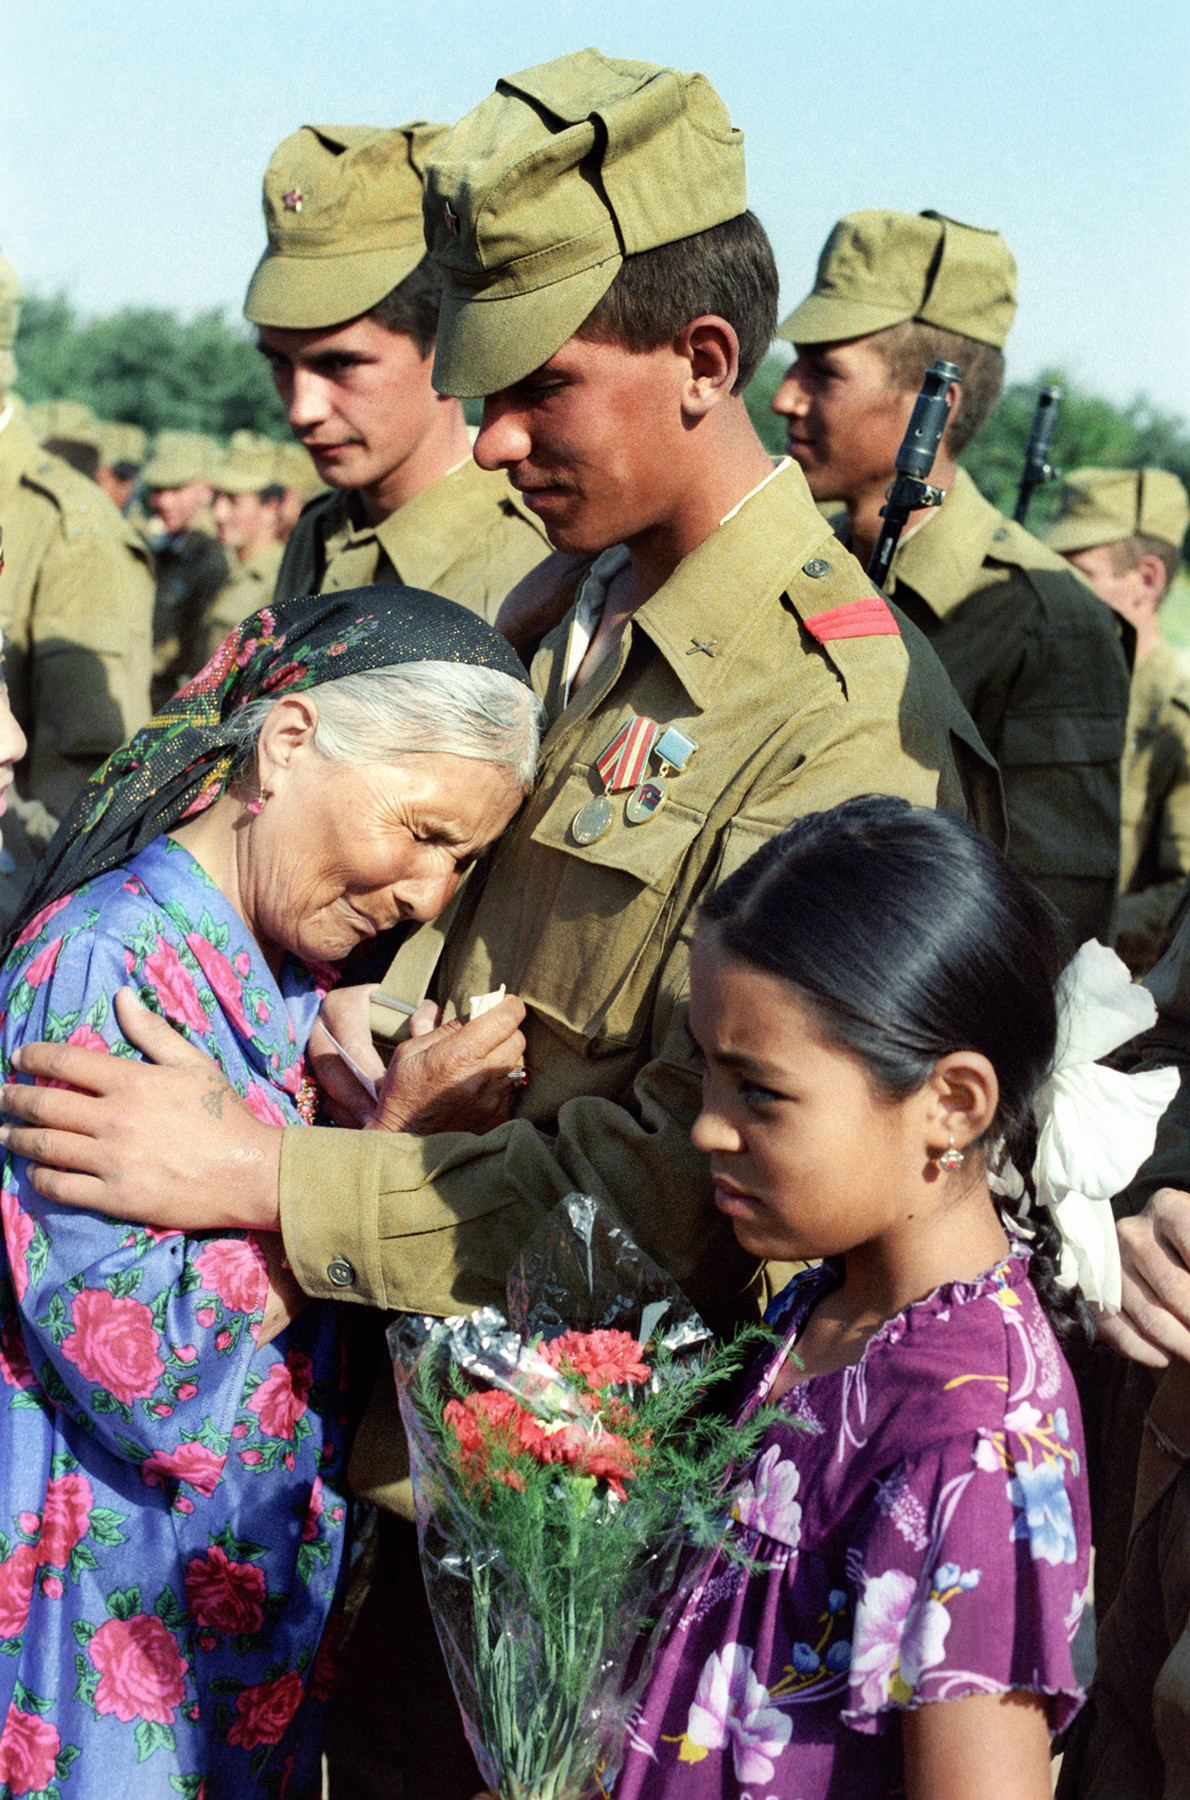 Област Сухандарја, Узбекистанска совјетска социјалистичка република, СССР. Старица са сузама дочекује совјетске војнике који се враћају из Авганистана.